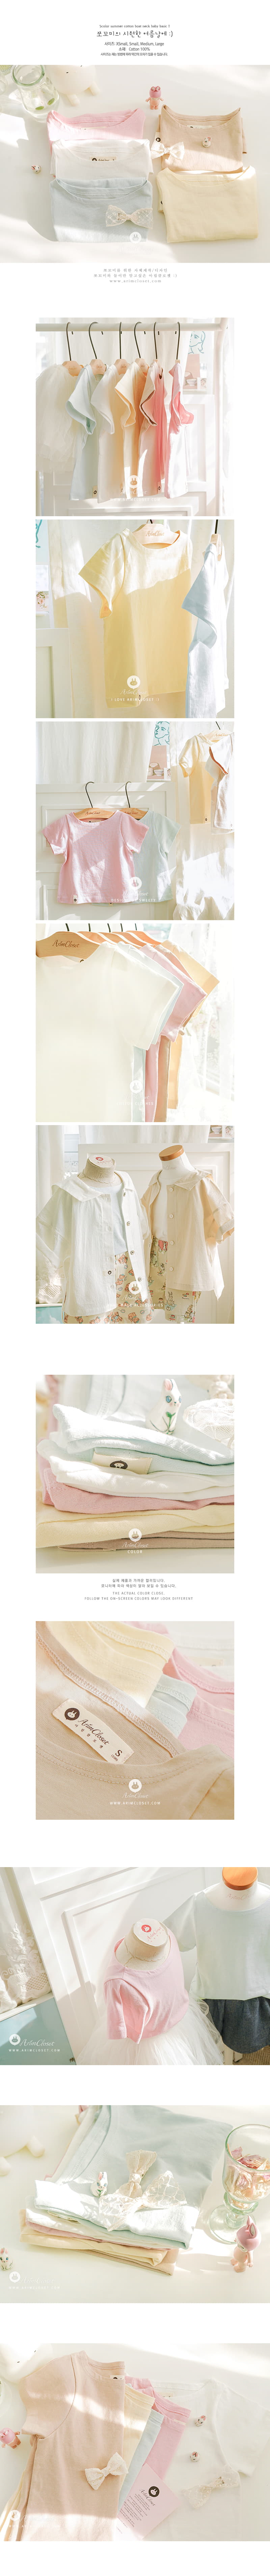 Arim Closet - Korean Baby Fashion - #babyclothing - Summer Boat Neck Tee - 2